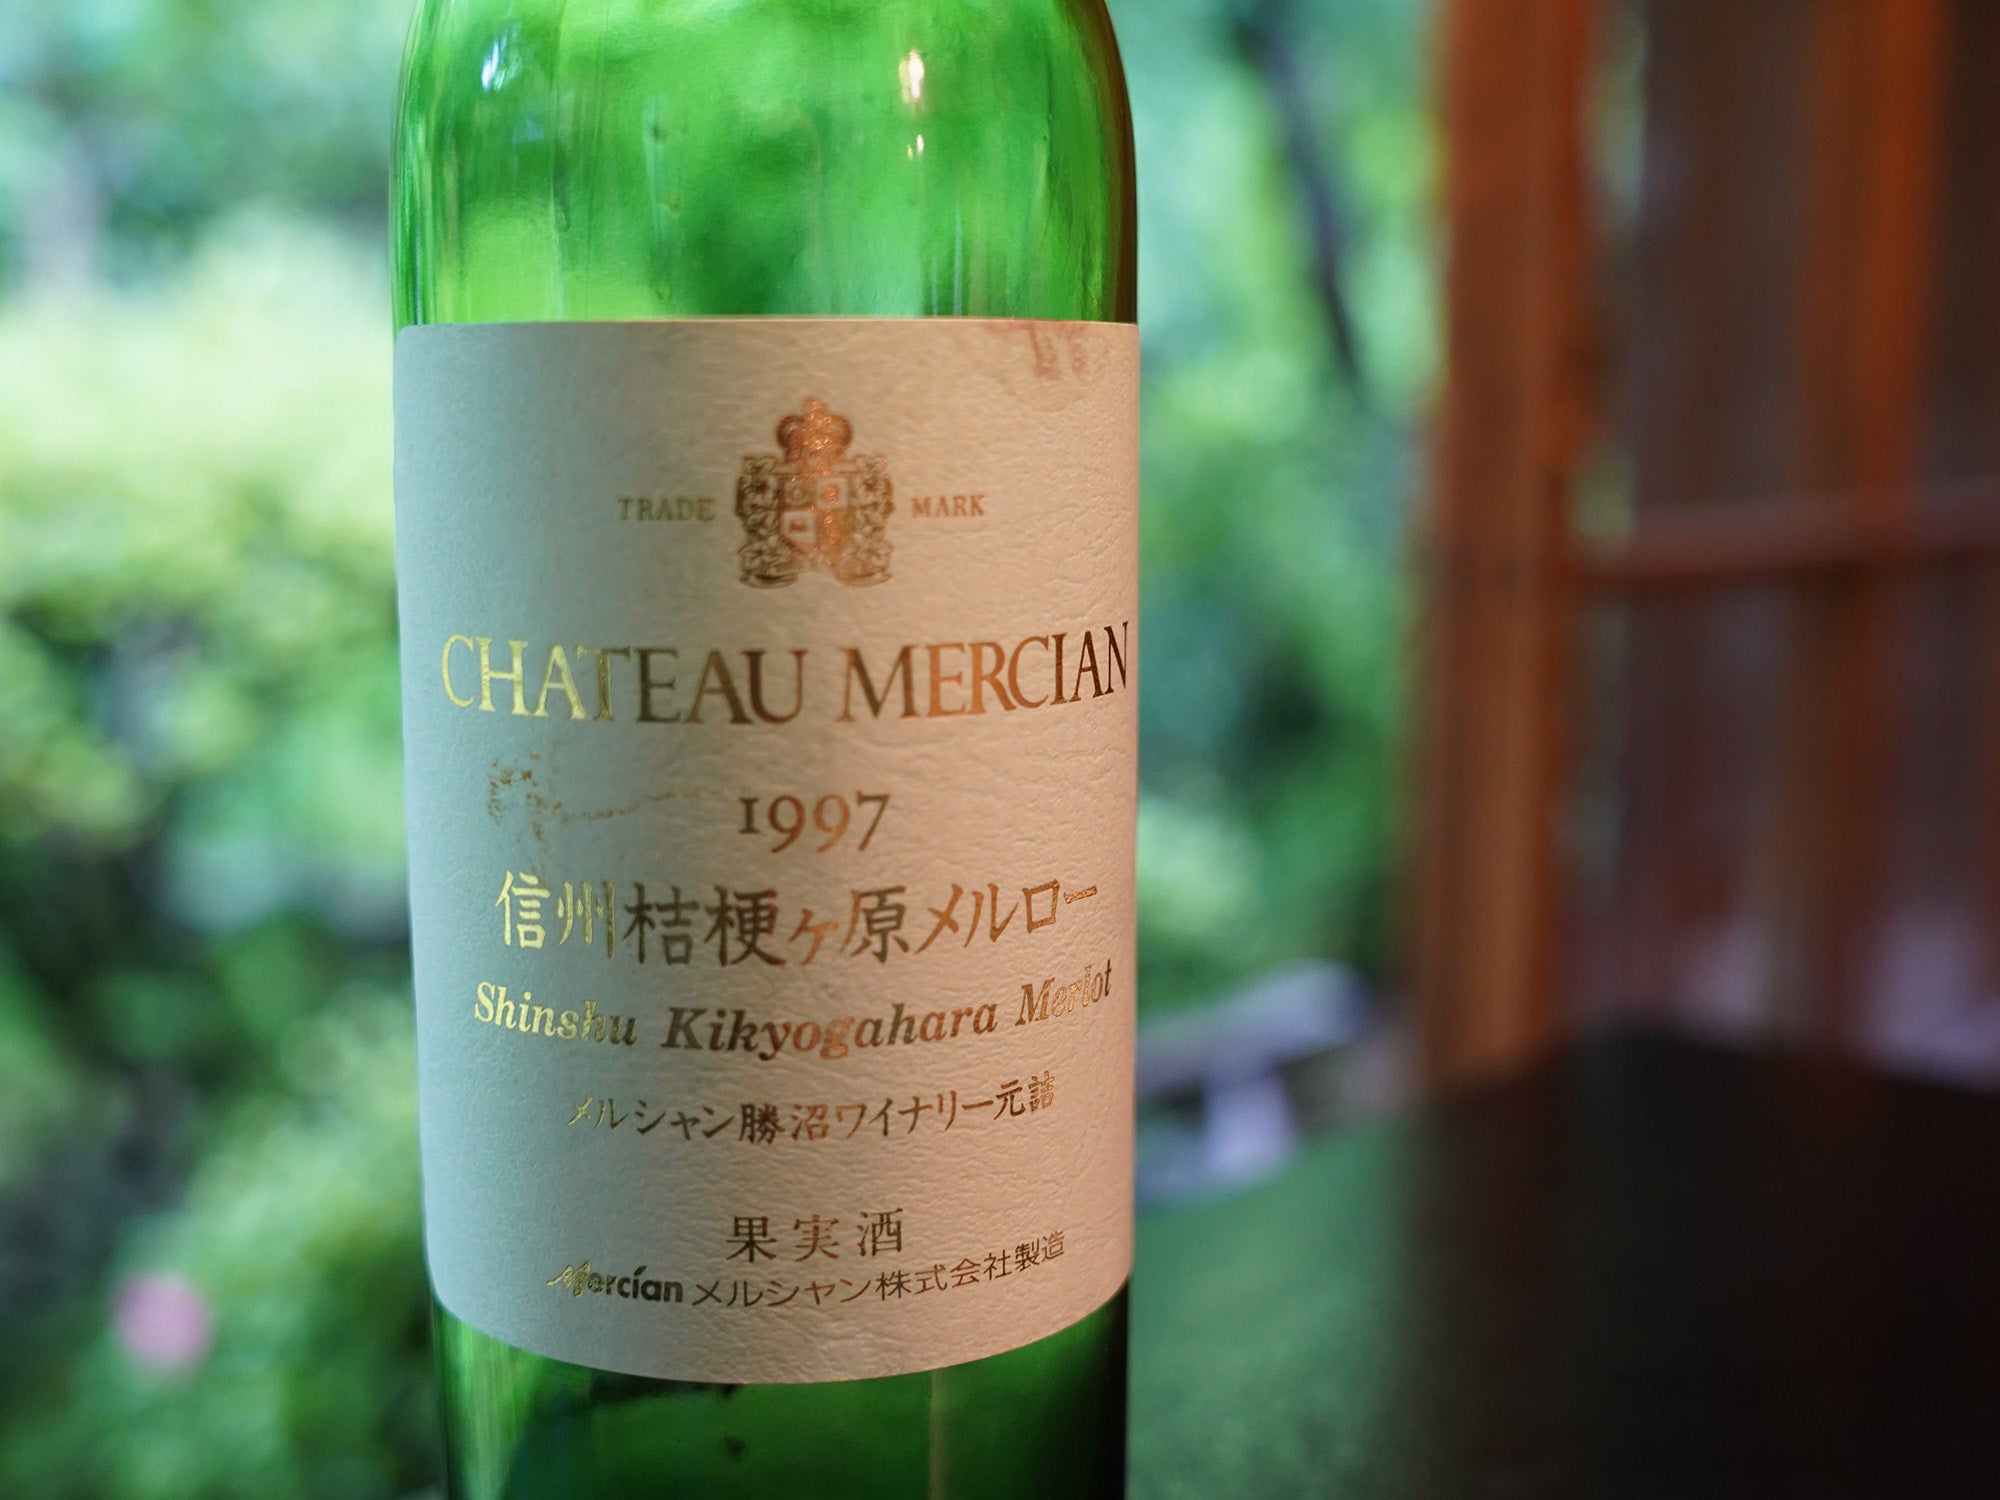 日本ワインを代表する欧州系品種、メルローを深堀ろう